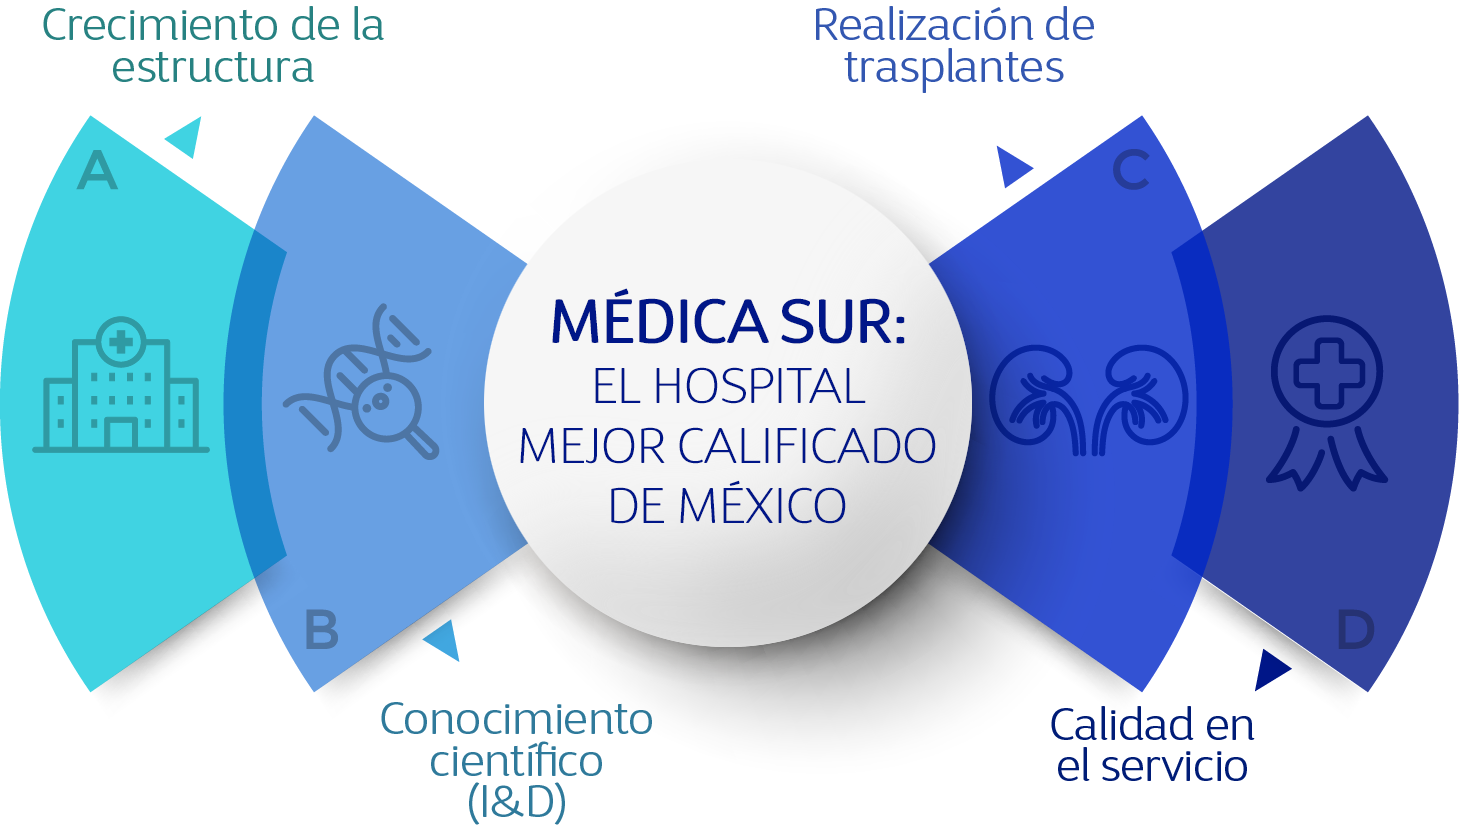 El hospital mejor calificado de Mxico